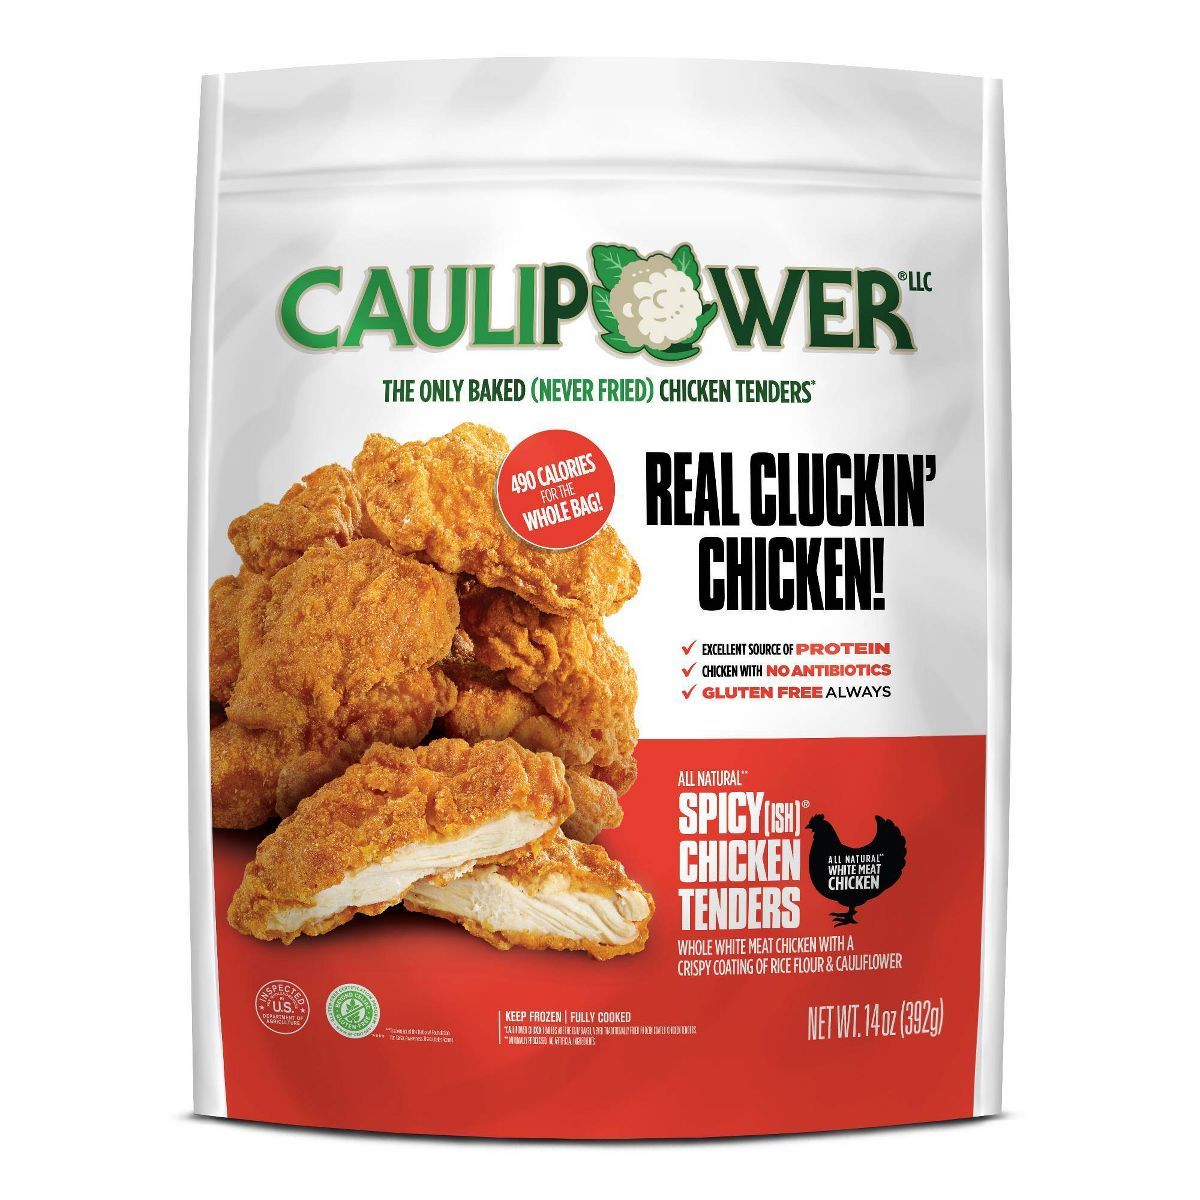 CAULIPOWER All Natural Spicy(ish) Chicken Tenders - Frozen - 14oz | Target